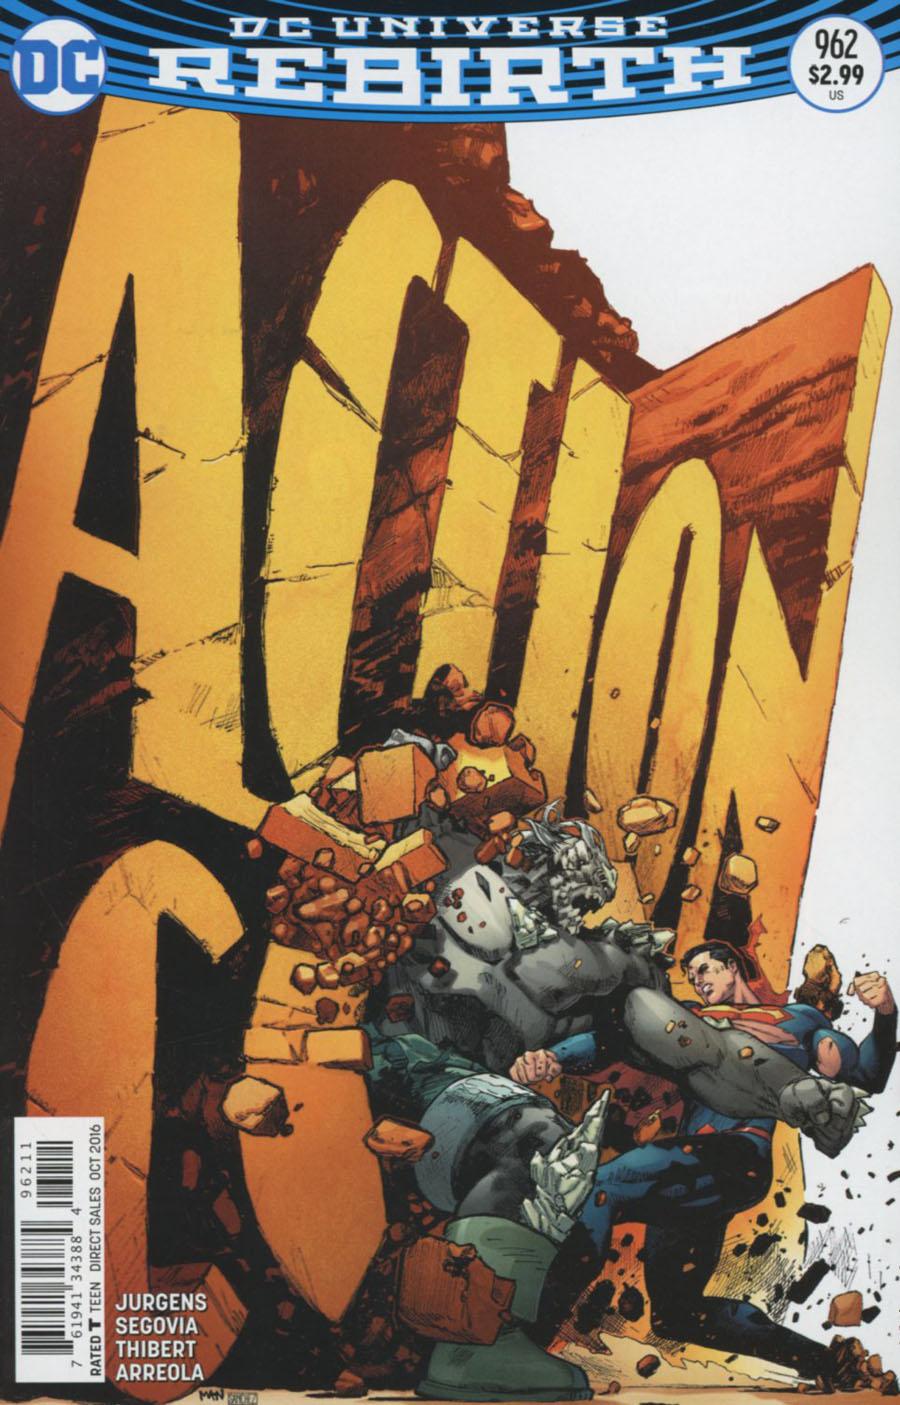 Action Comics Vol. 2 #962